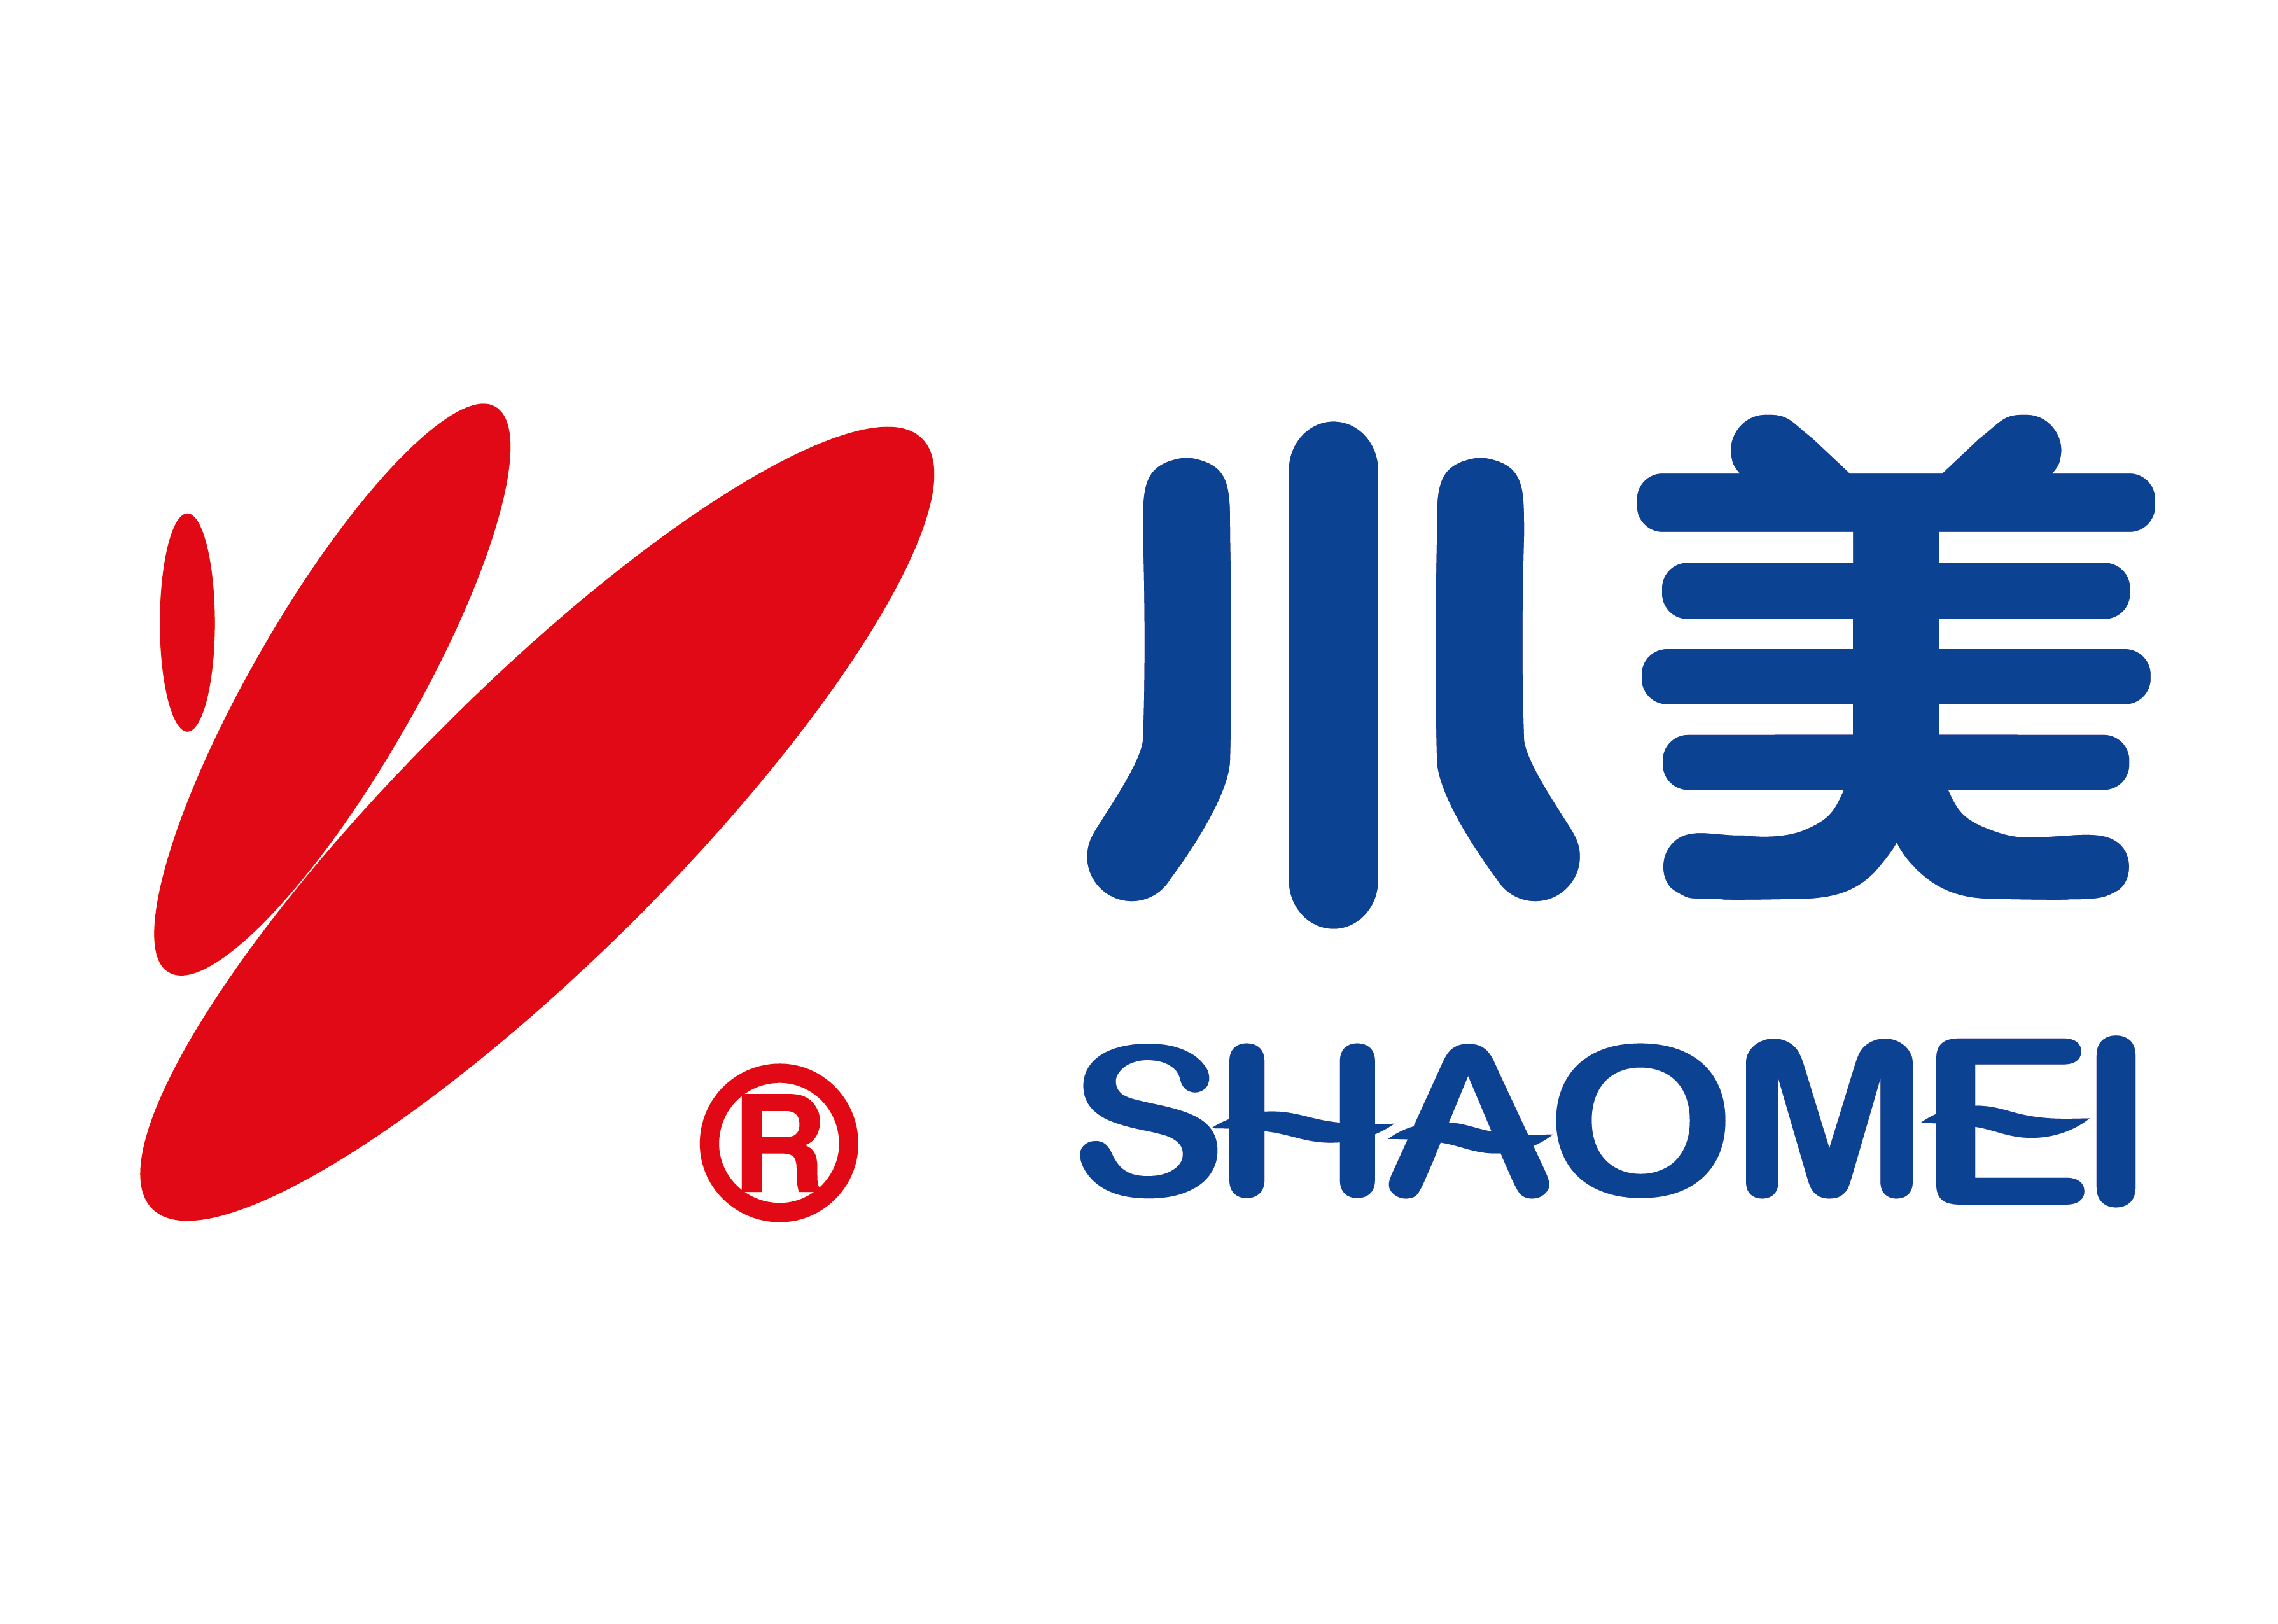 Shaomei